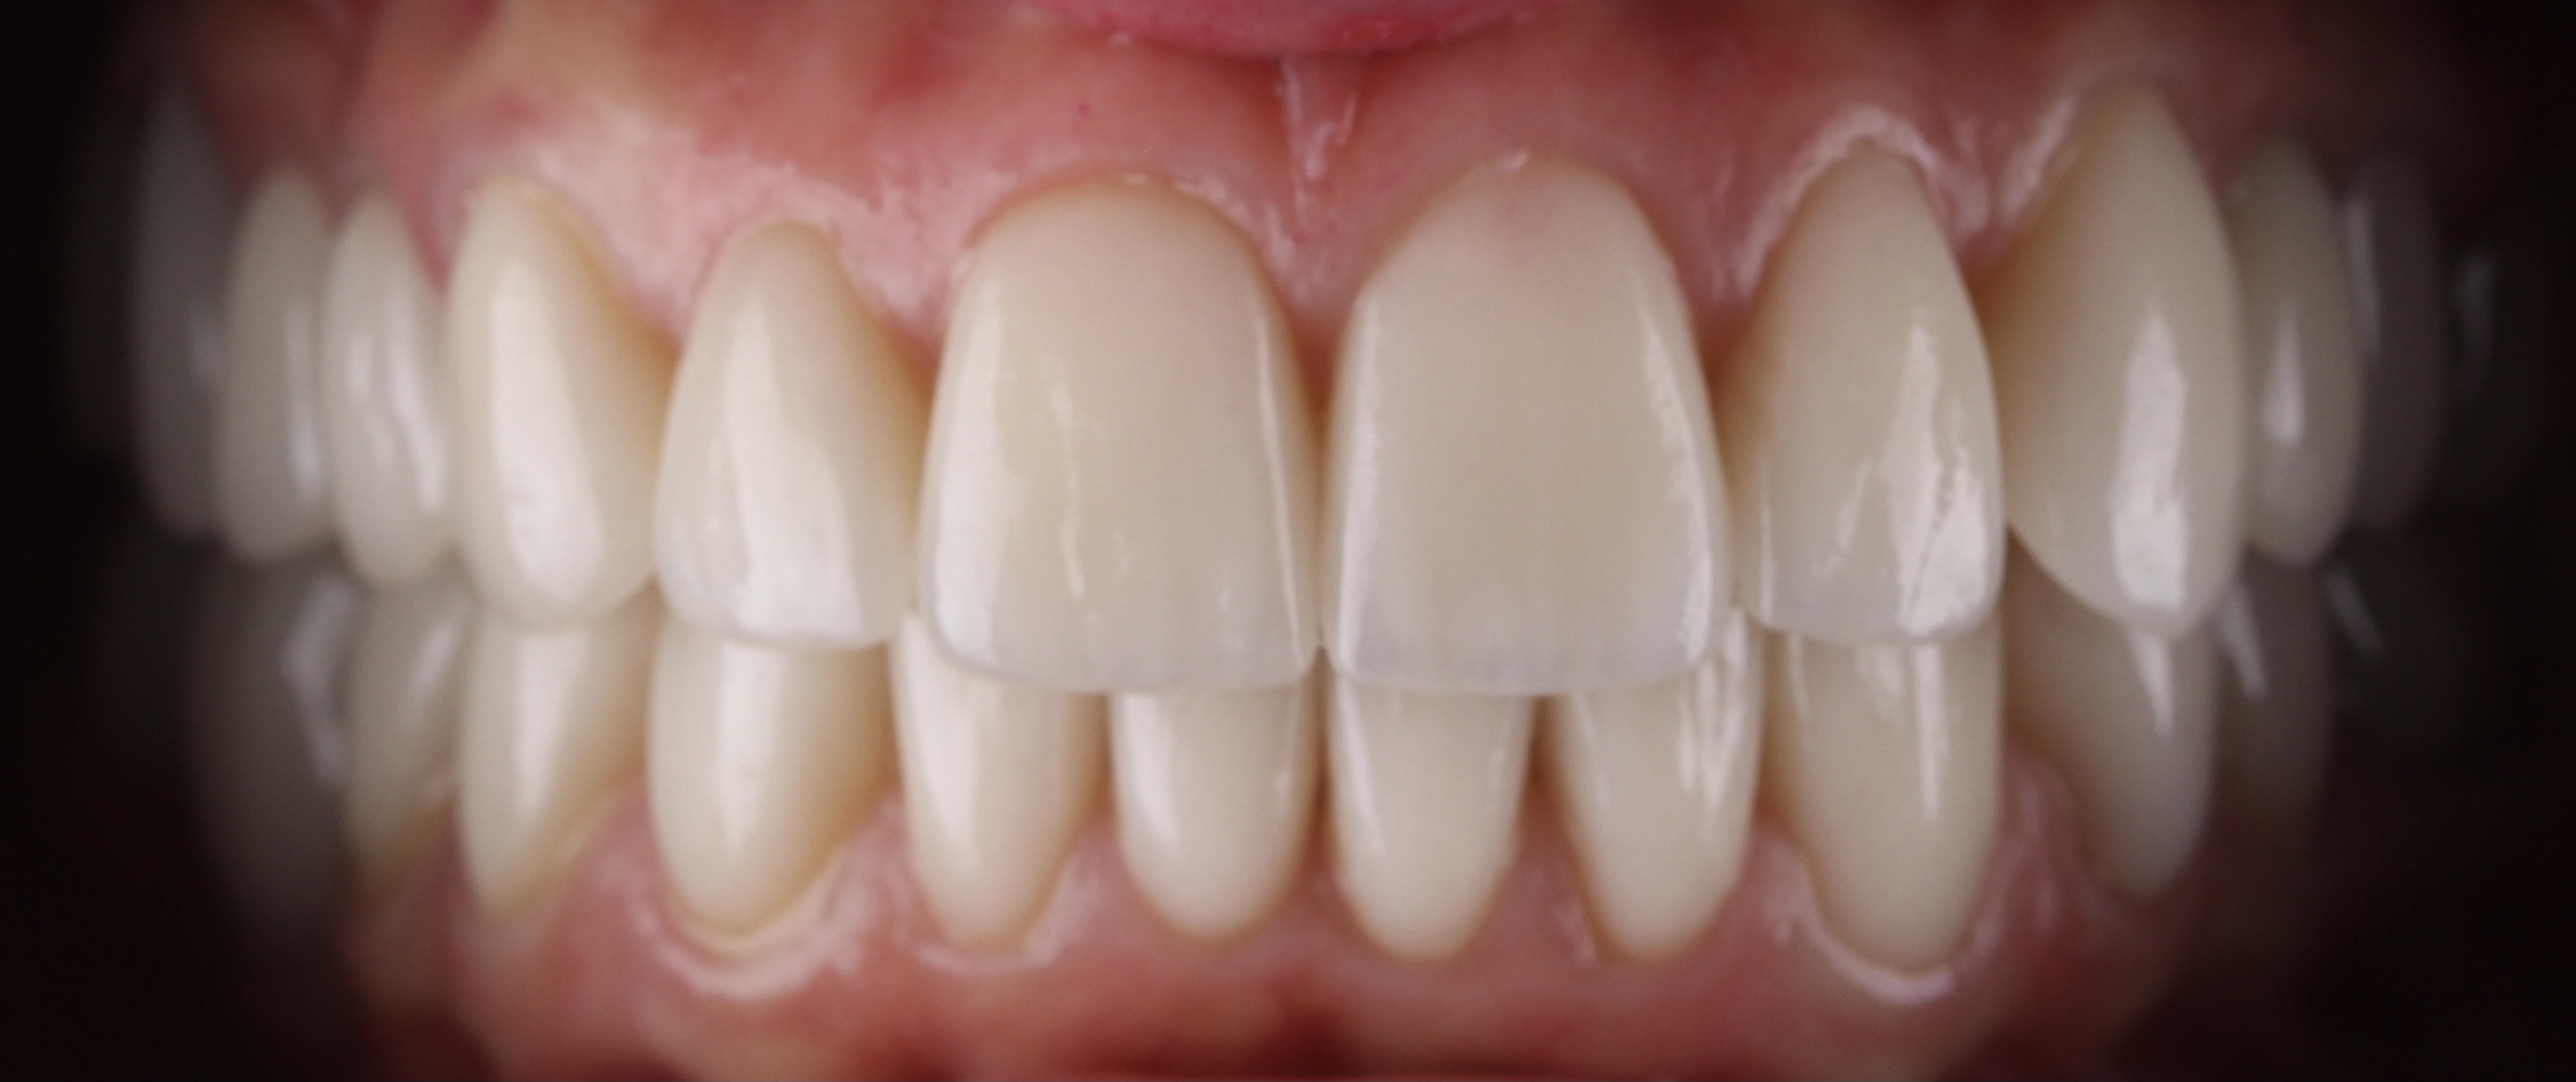 Лечение шейки зуба 'после' в клинике Super Smile кейс 2